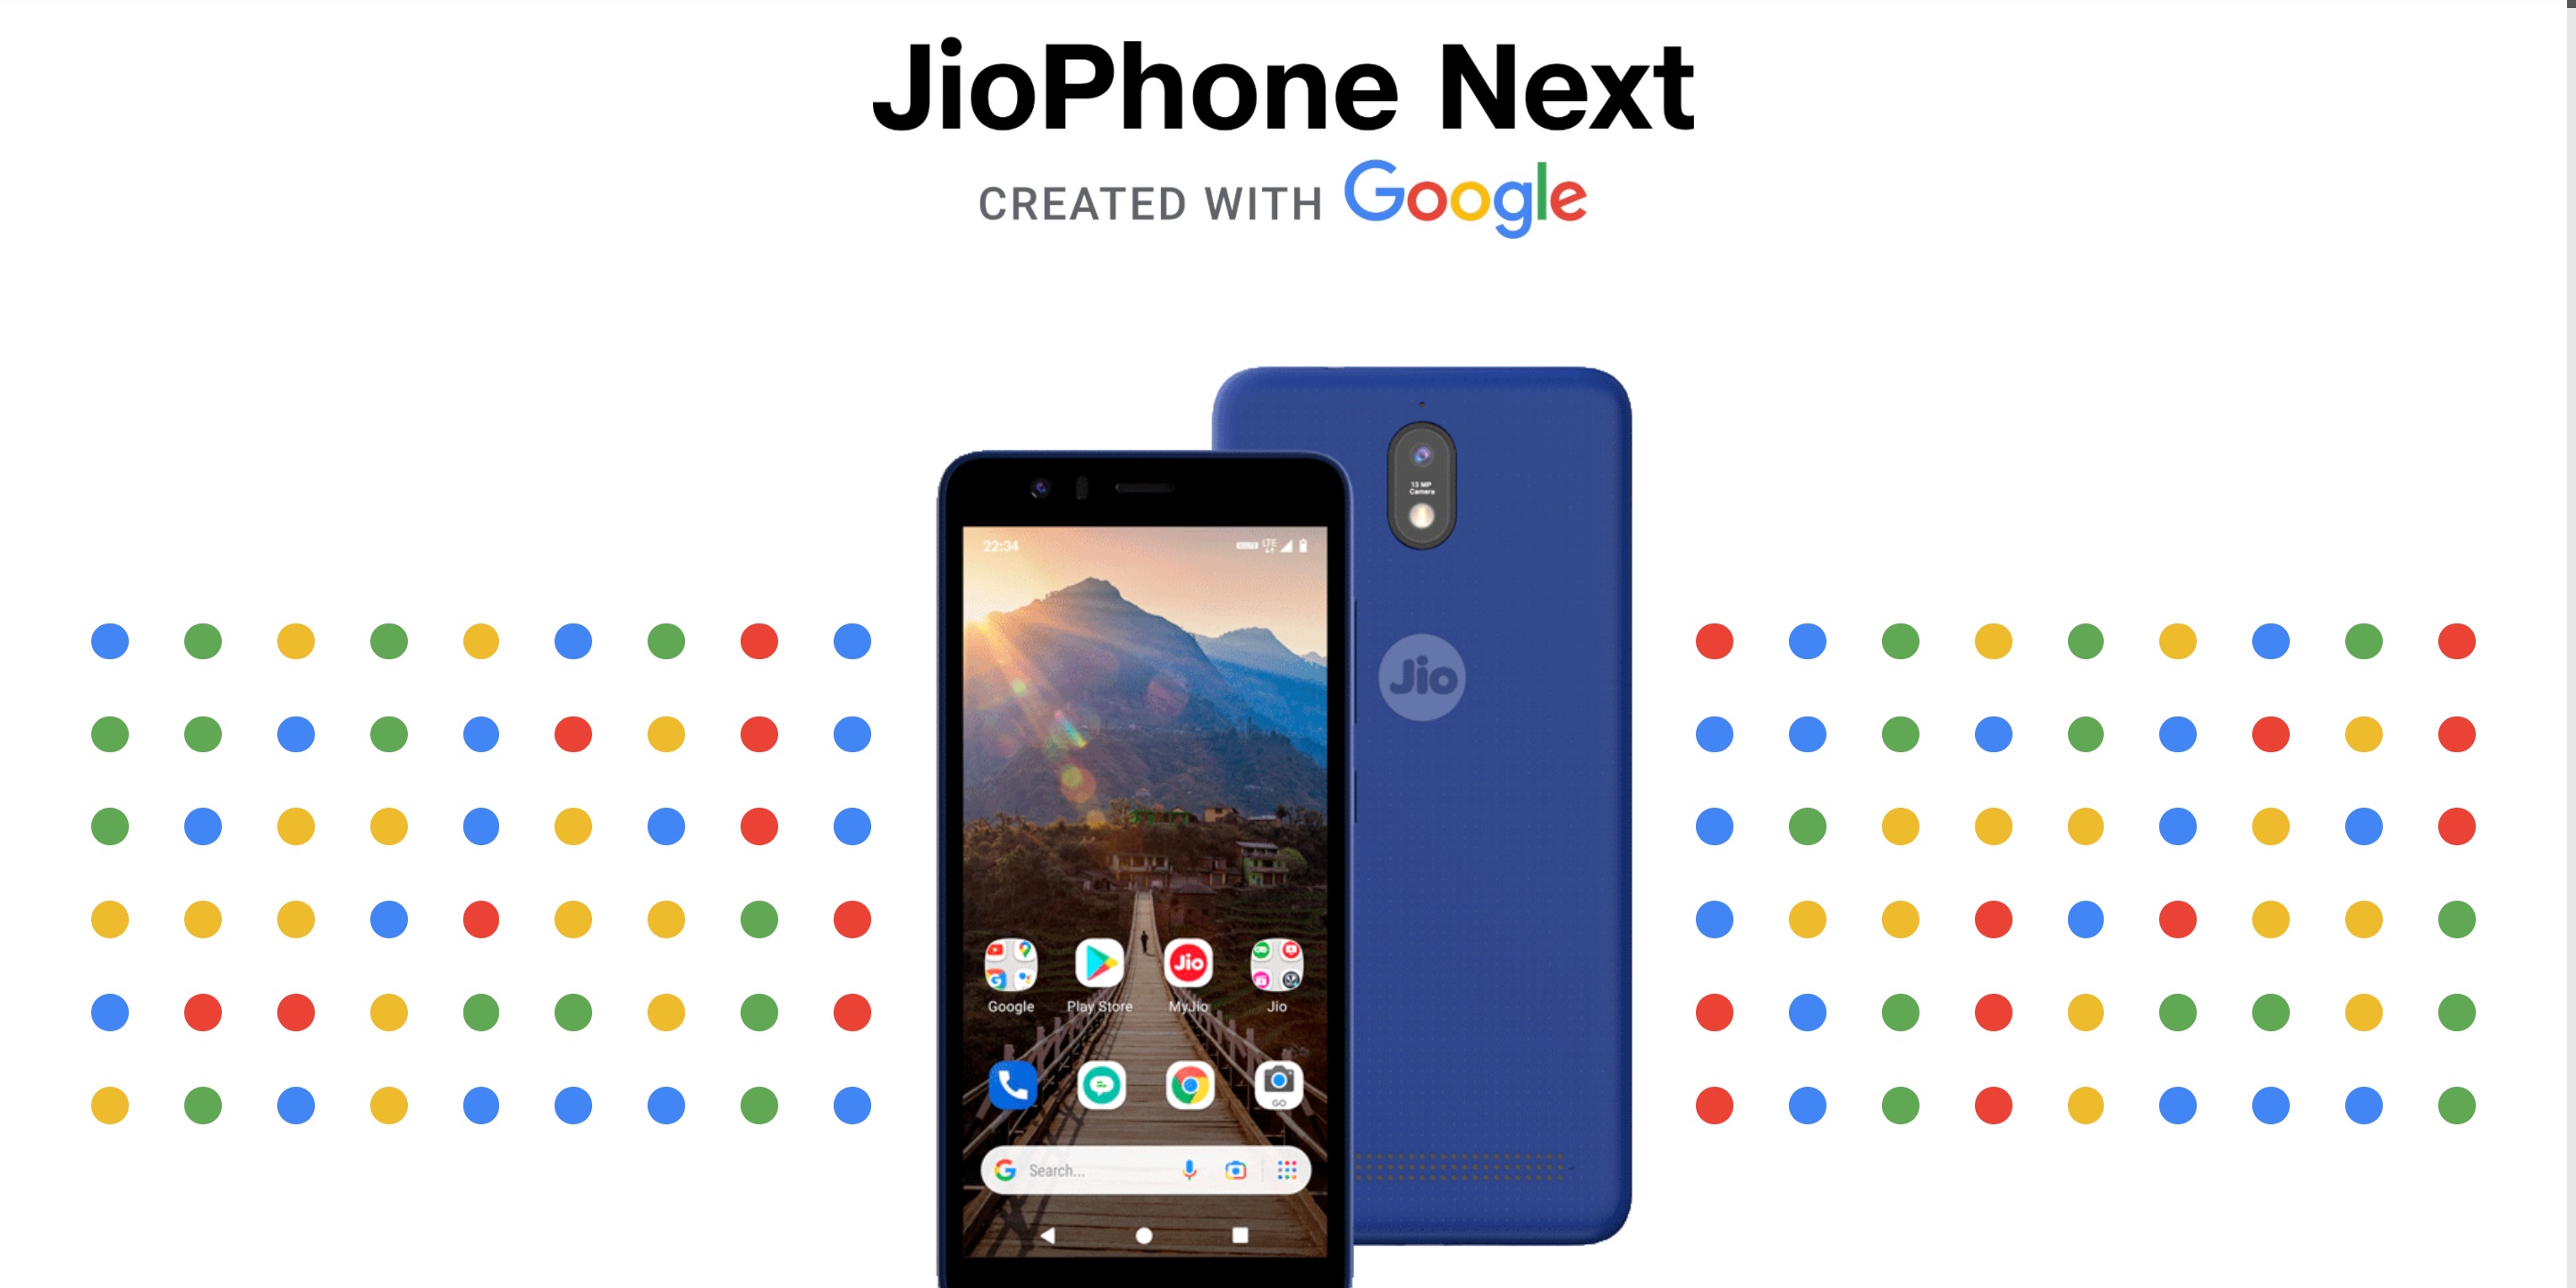 El precio del "smartphone 4G más barato del mundo" JioPhone Next, desarrollado en colaboración con Google, ha sido finalmente anunciado